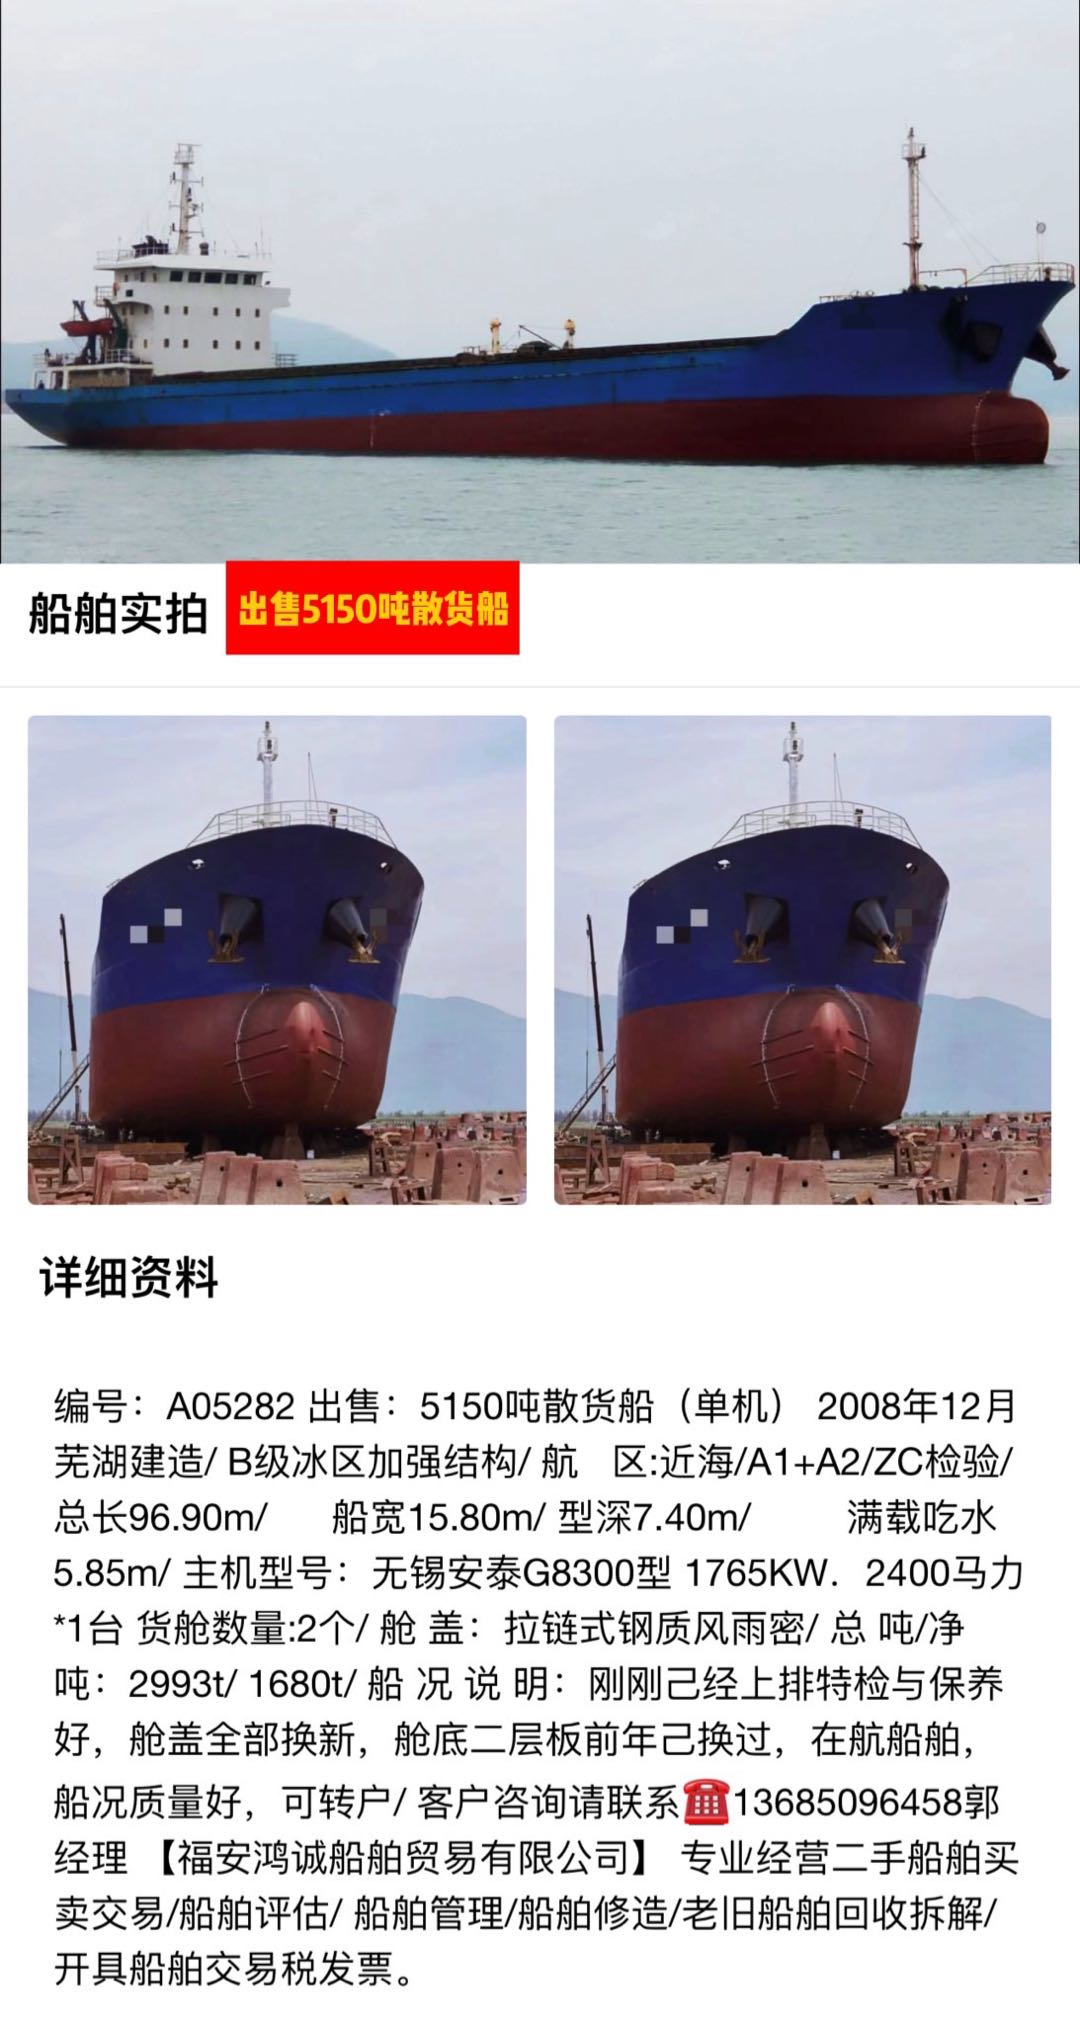 出售：5150吨在航散货船 2008年12月安徽芜湖建造/